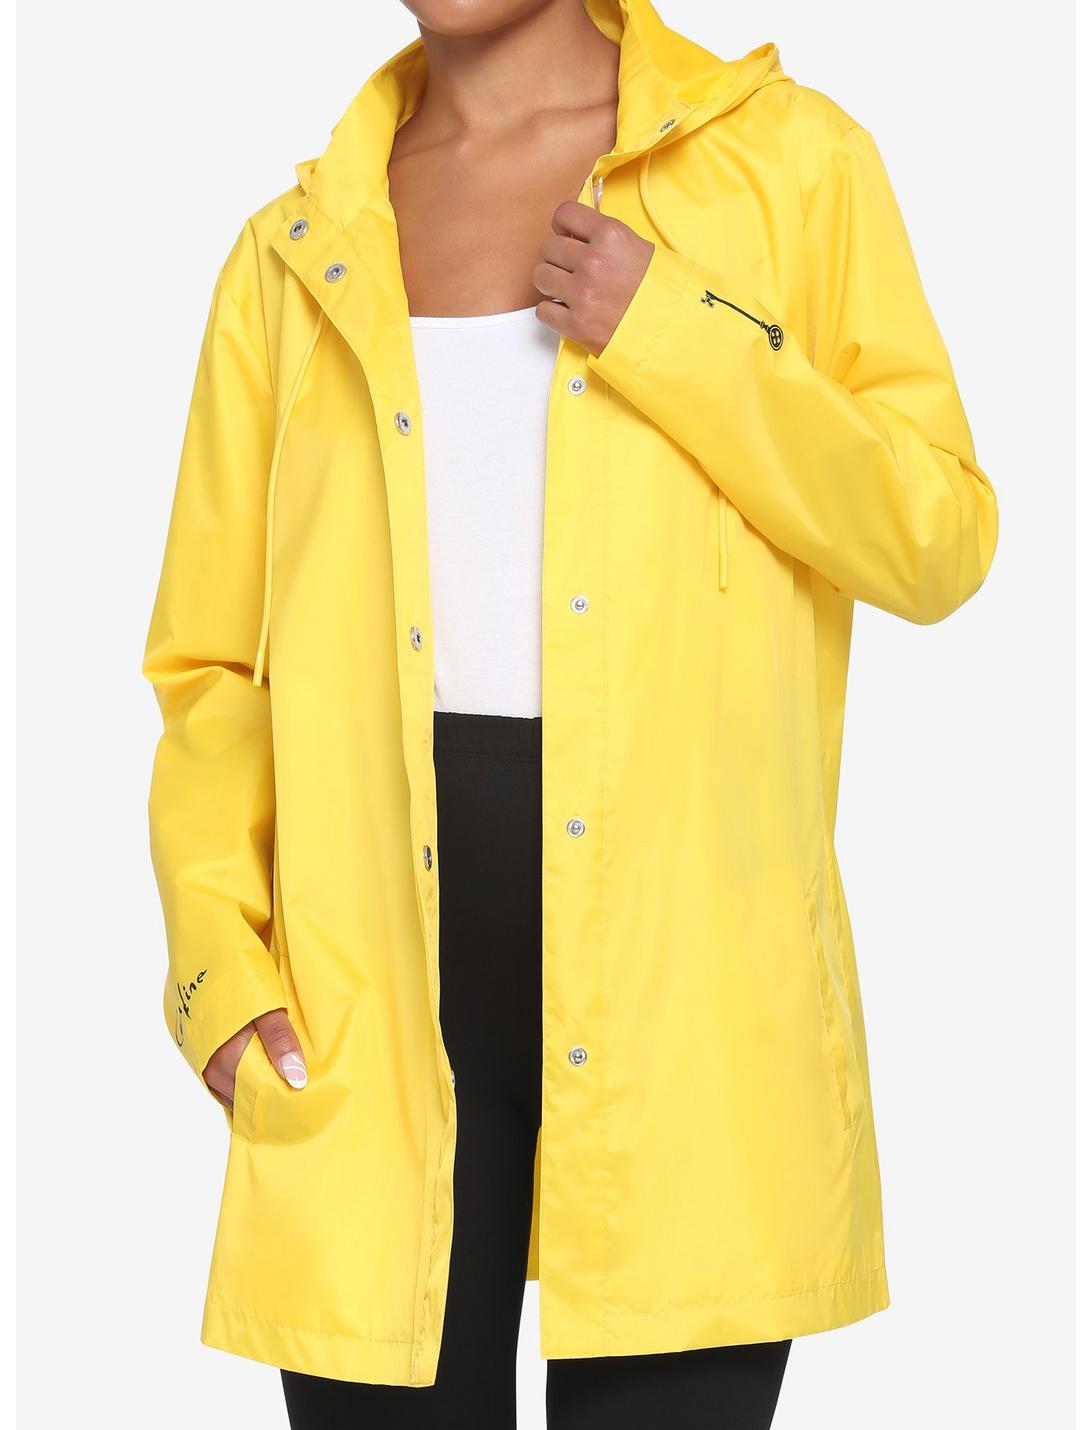 Coraline Yellow Raincoat, MULTI, hi-res